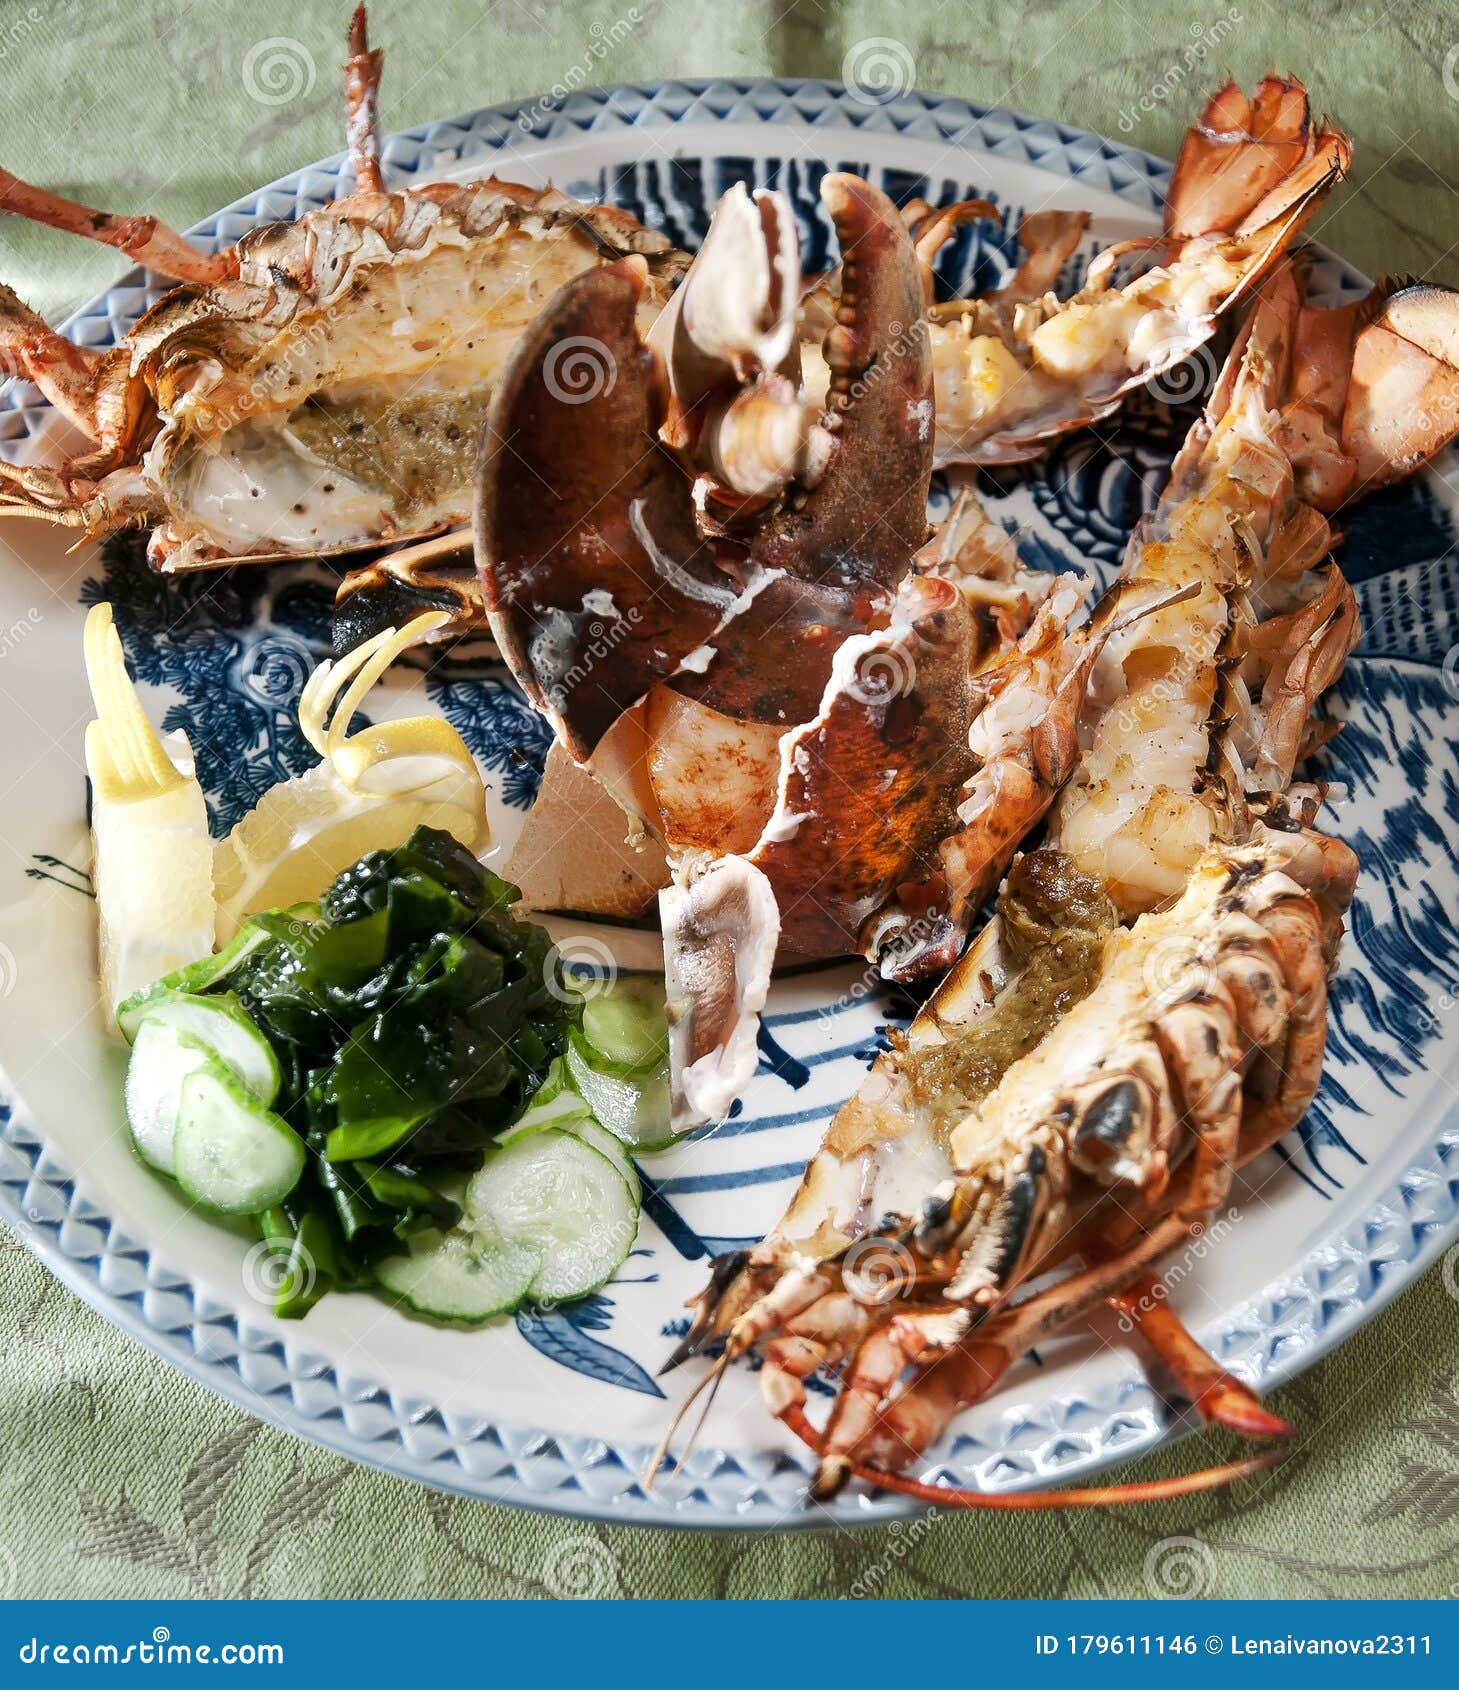 Lobster garden Tresco Sea